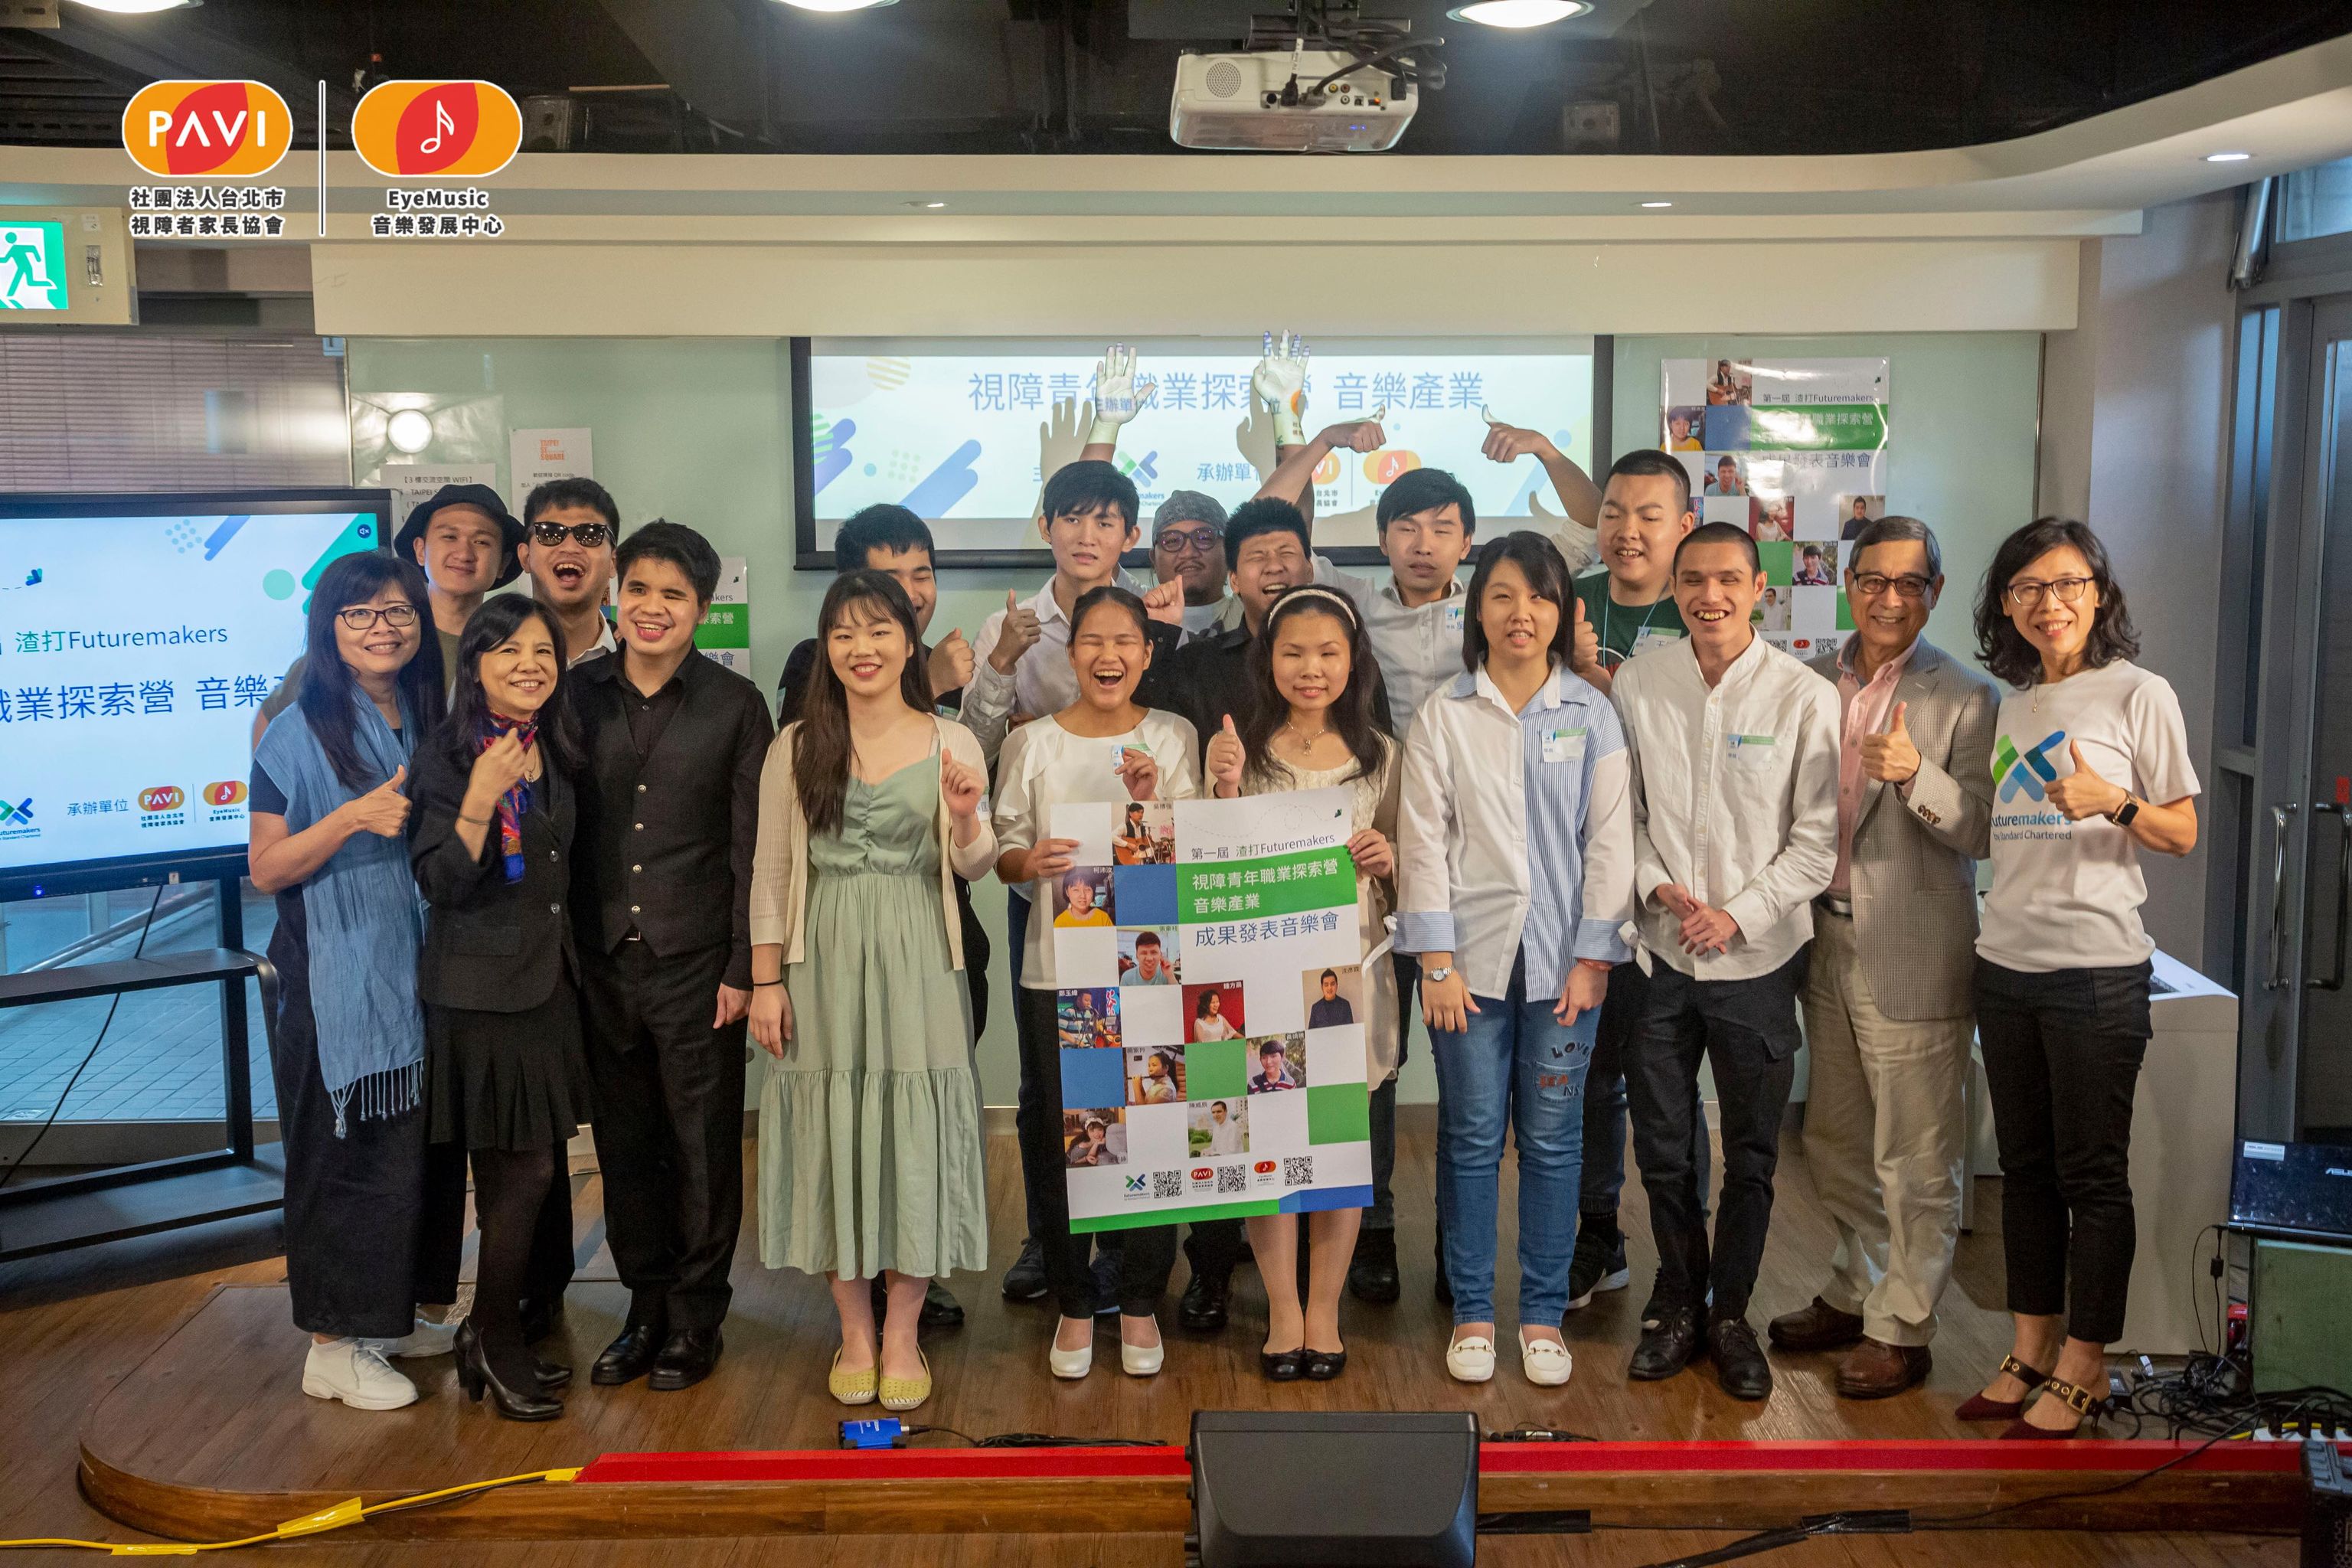 靖騰參加「渣打Futuremakers視障音樂探索營」的活動，與夥伴合影。